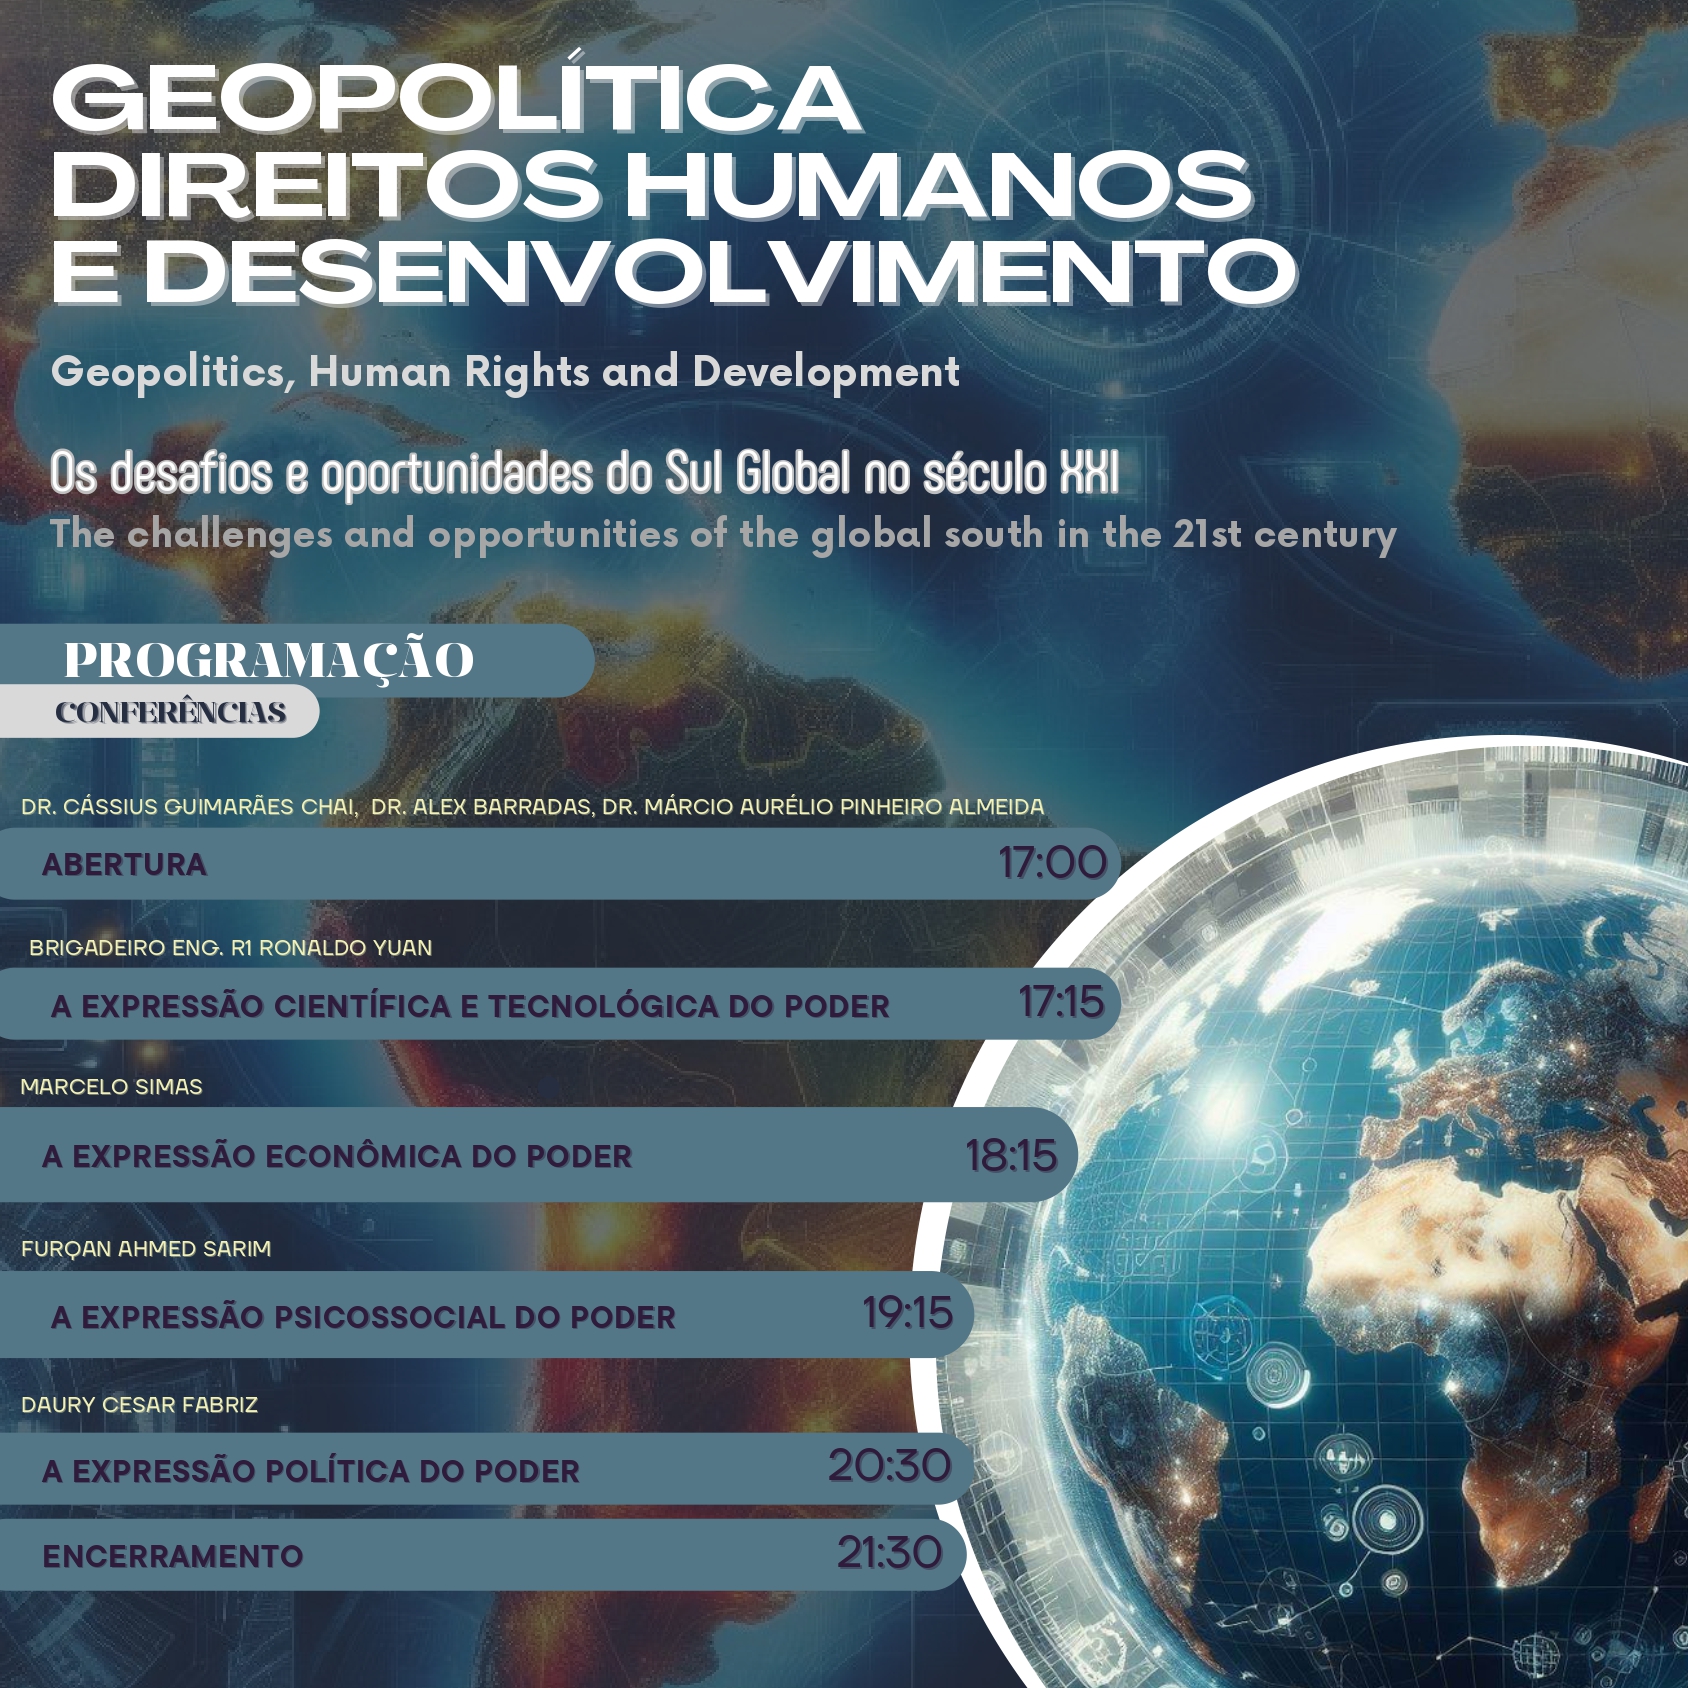 Grupo de Pesquisa Cultura, Direito e Sociedade organiza Seminário Internacional de Extensão Acadêmica sobre Geopolítica, Direitos Humanos e Desenvolvimento